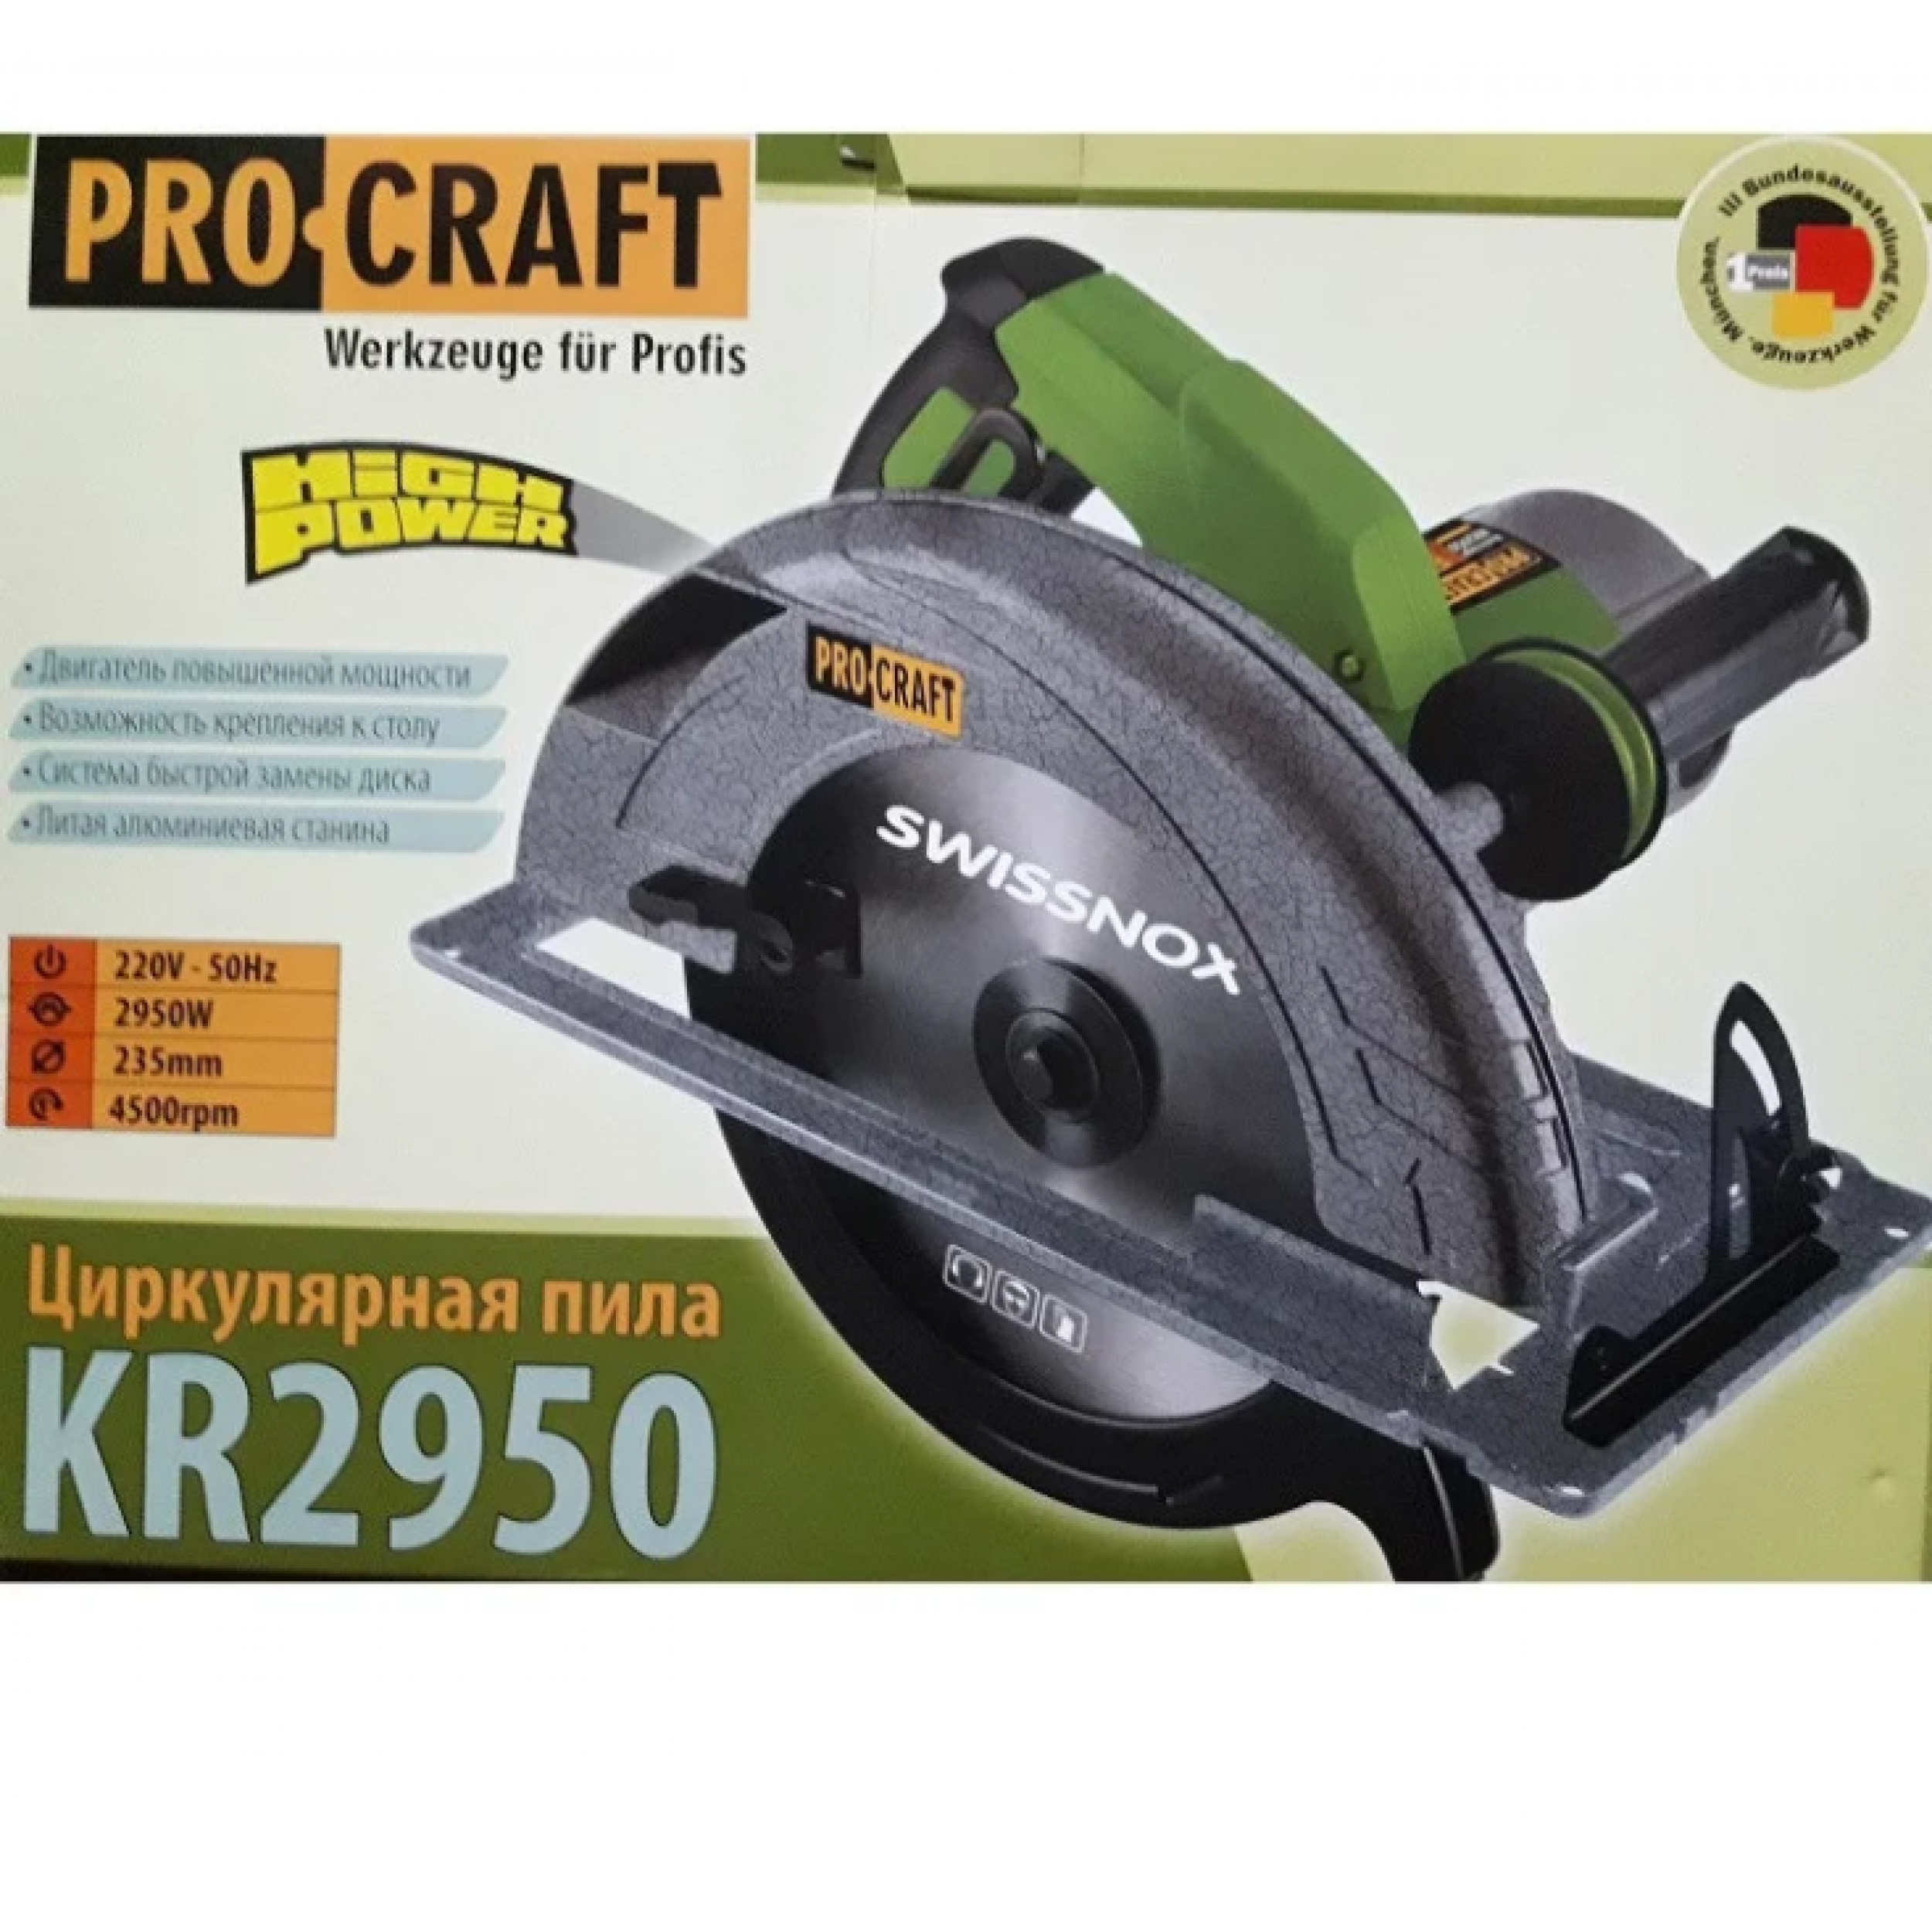 Ferastrau circular ProCraft KR2950